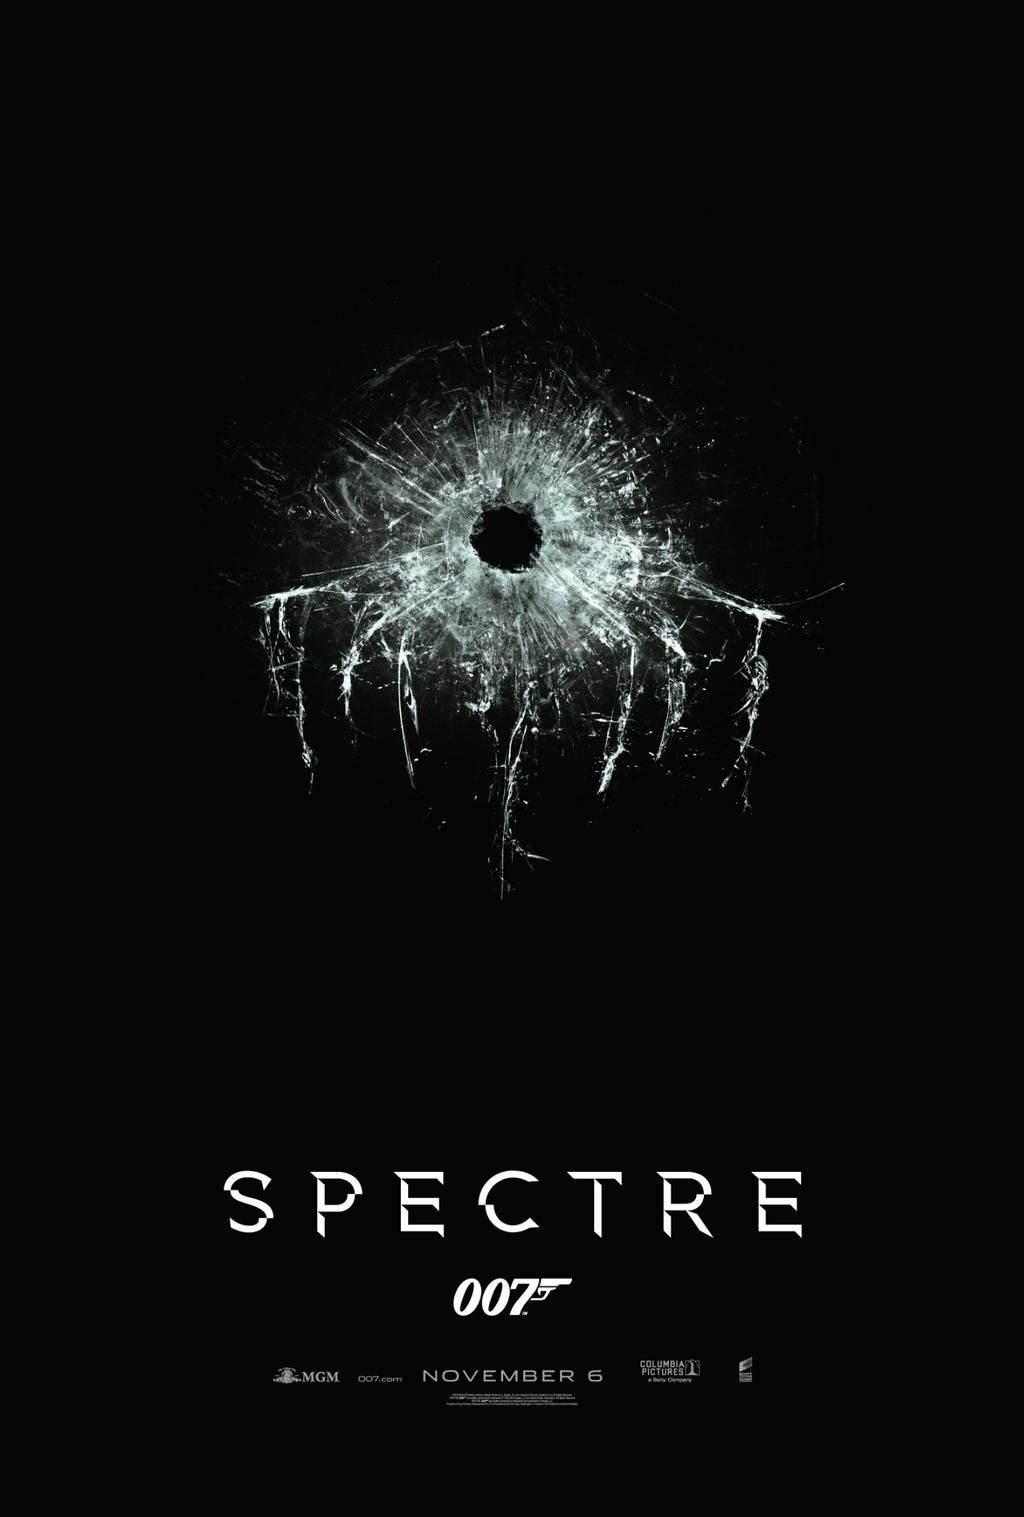 Spectre's teaser poster